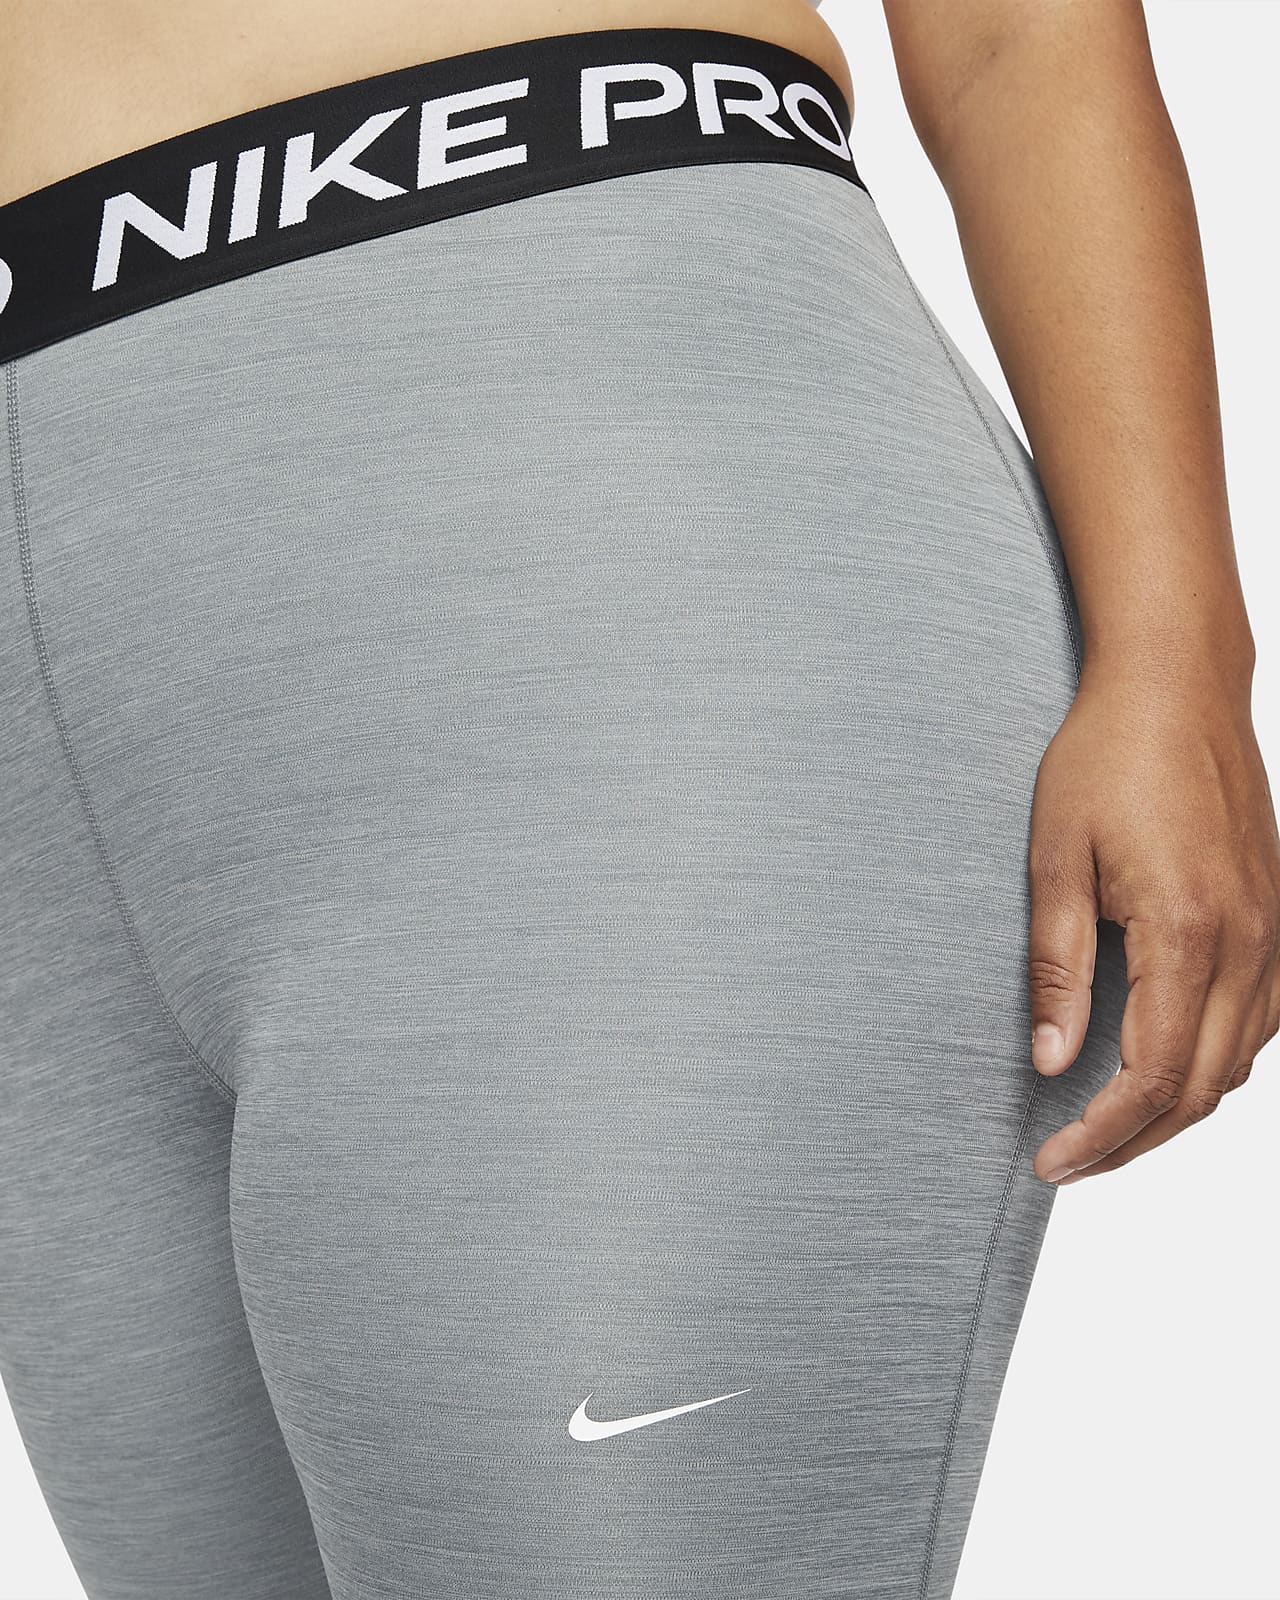 koppel gen gebroken Nike Pro 365 Women's Leggings (Plus Size). Nike.com